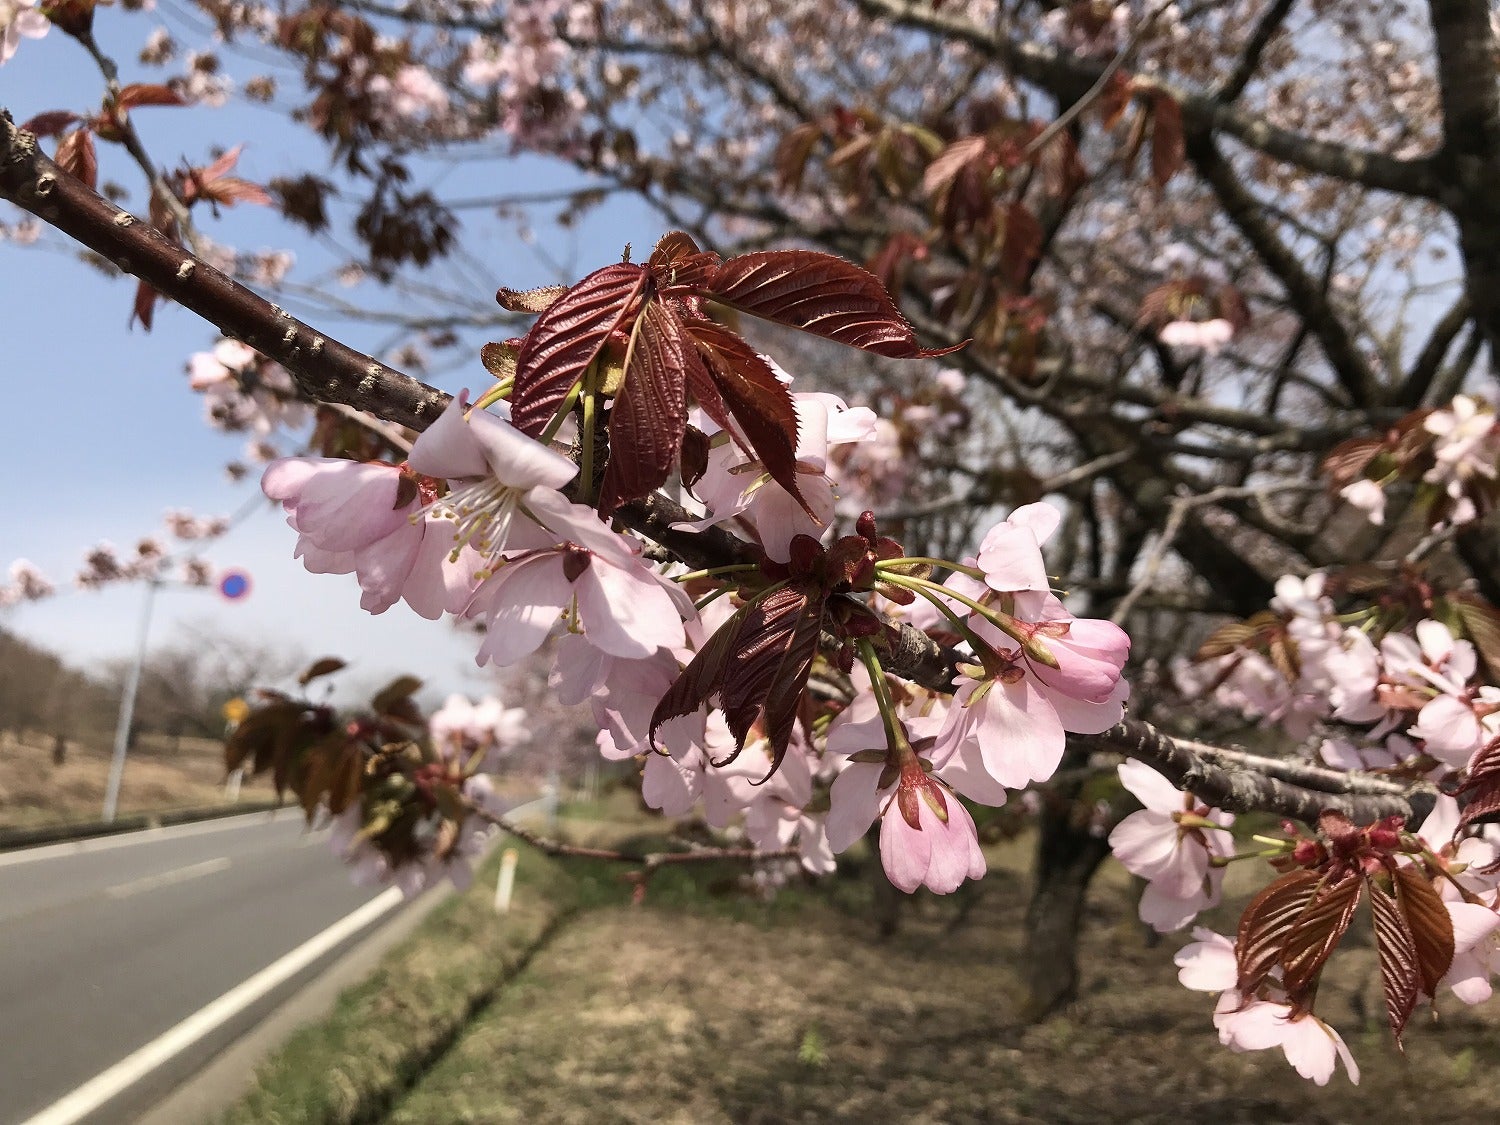 田沢湖にも桜の季節がやってきた ヨーデルと秋田の四季折々